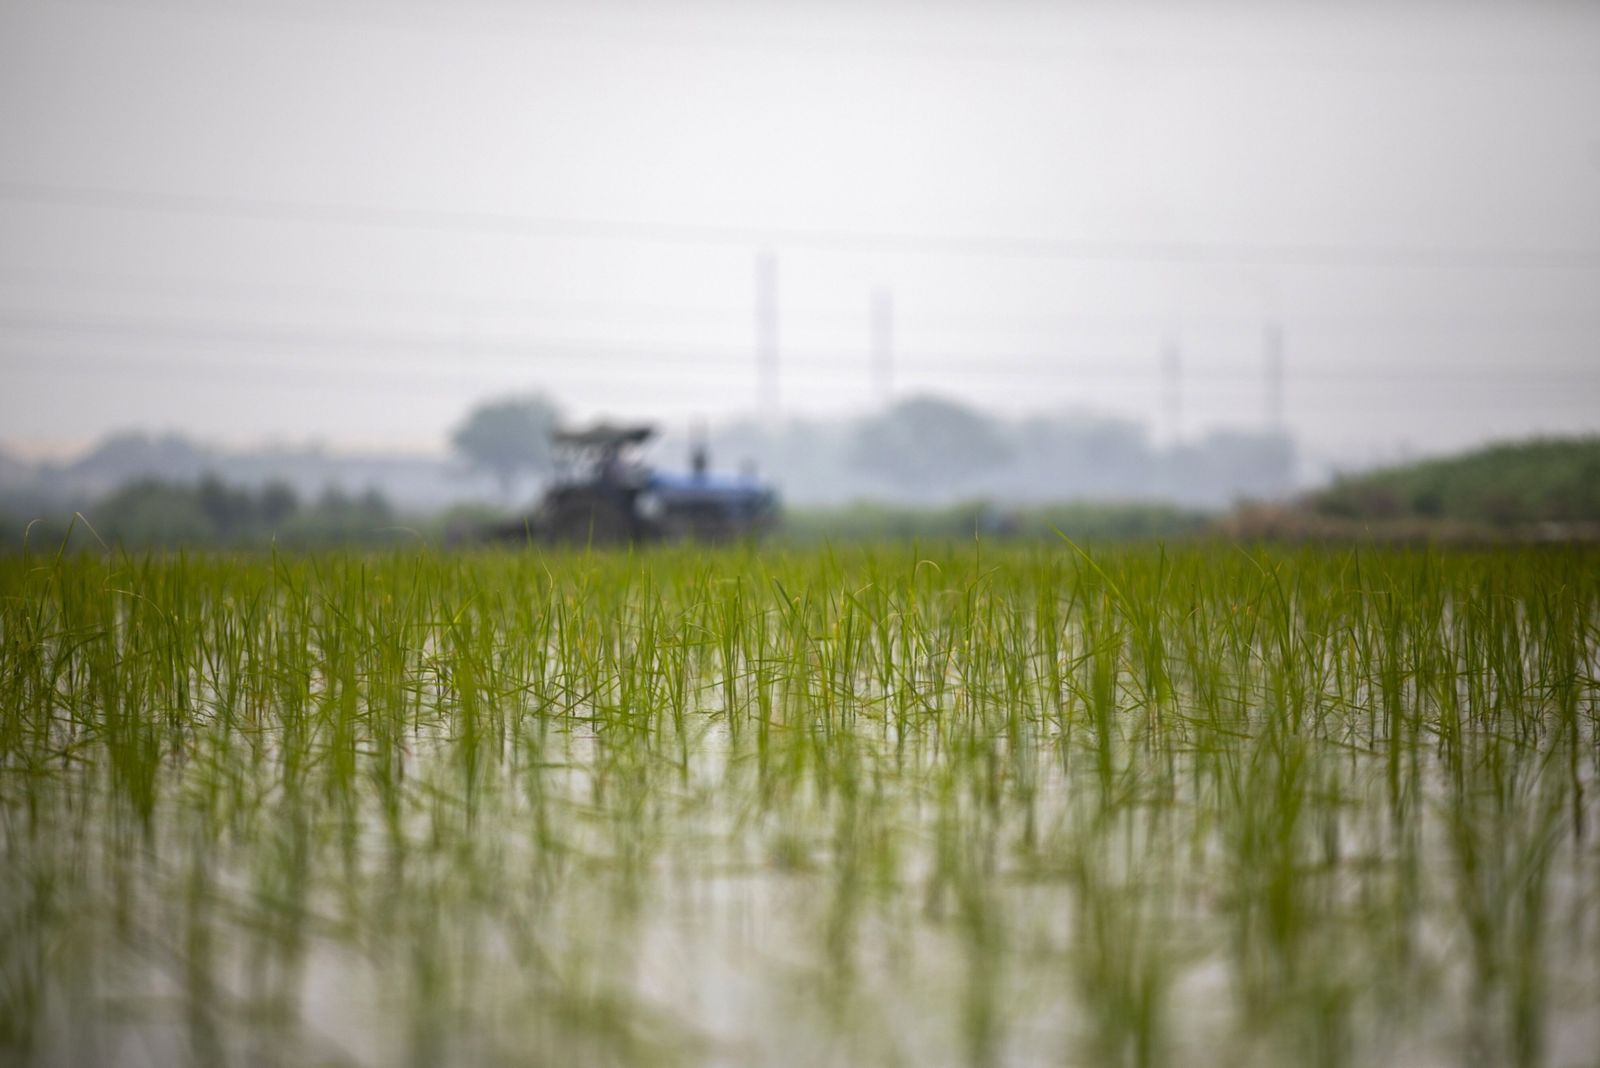 صعود أسعار الأرز يضر مليارات الأشخاص في آسيا وأفريقيا